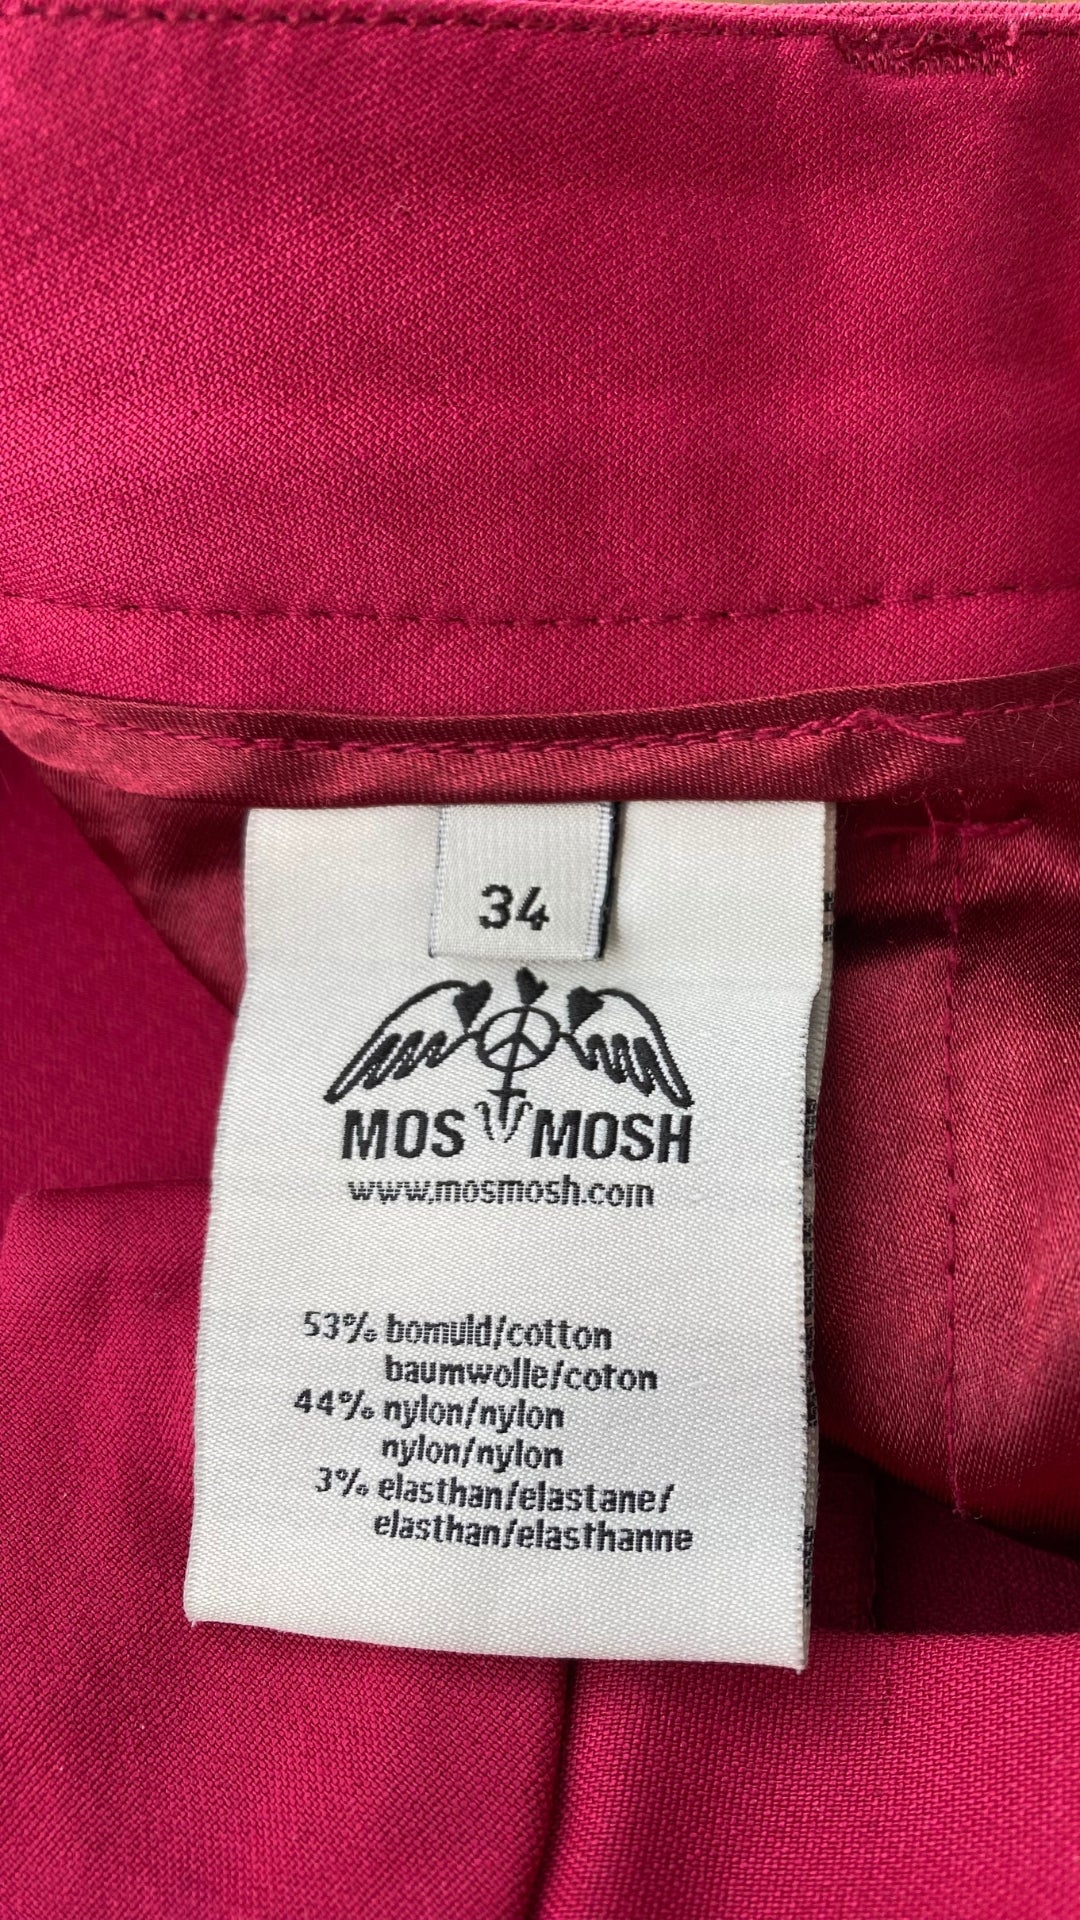 Pantalon écourté rose cerise Mos Mosh, taille 34 (européen - 25-xs). Vue de l'étiquette de taille et composition.